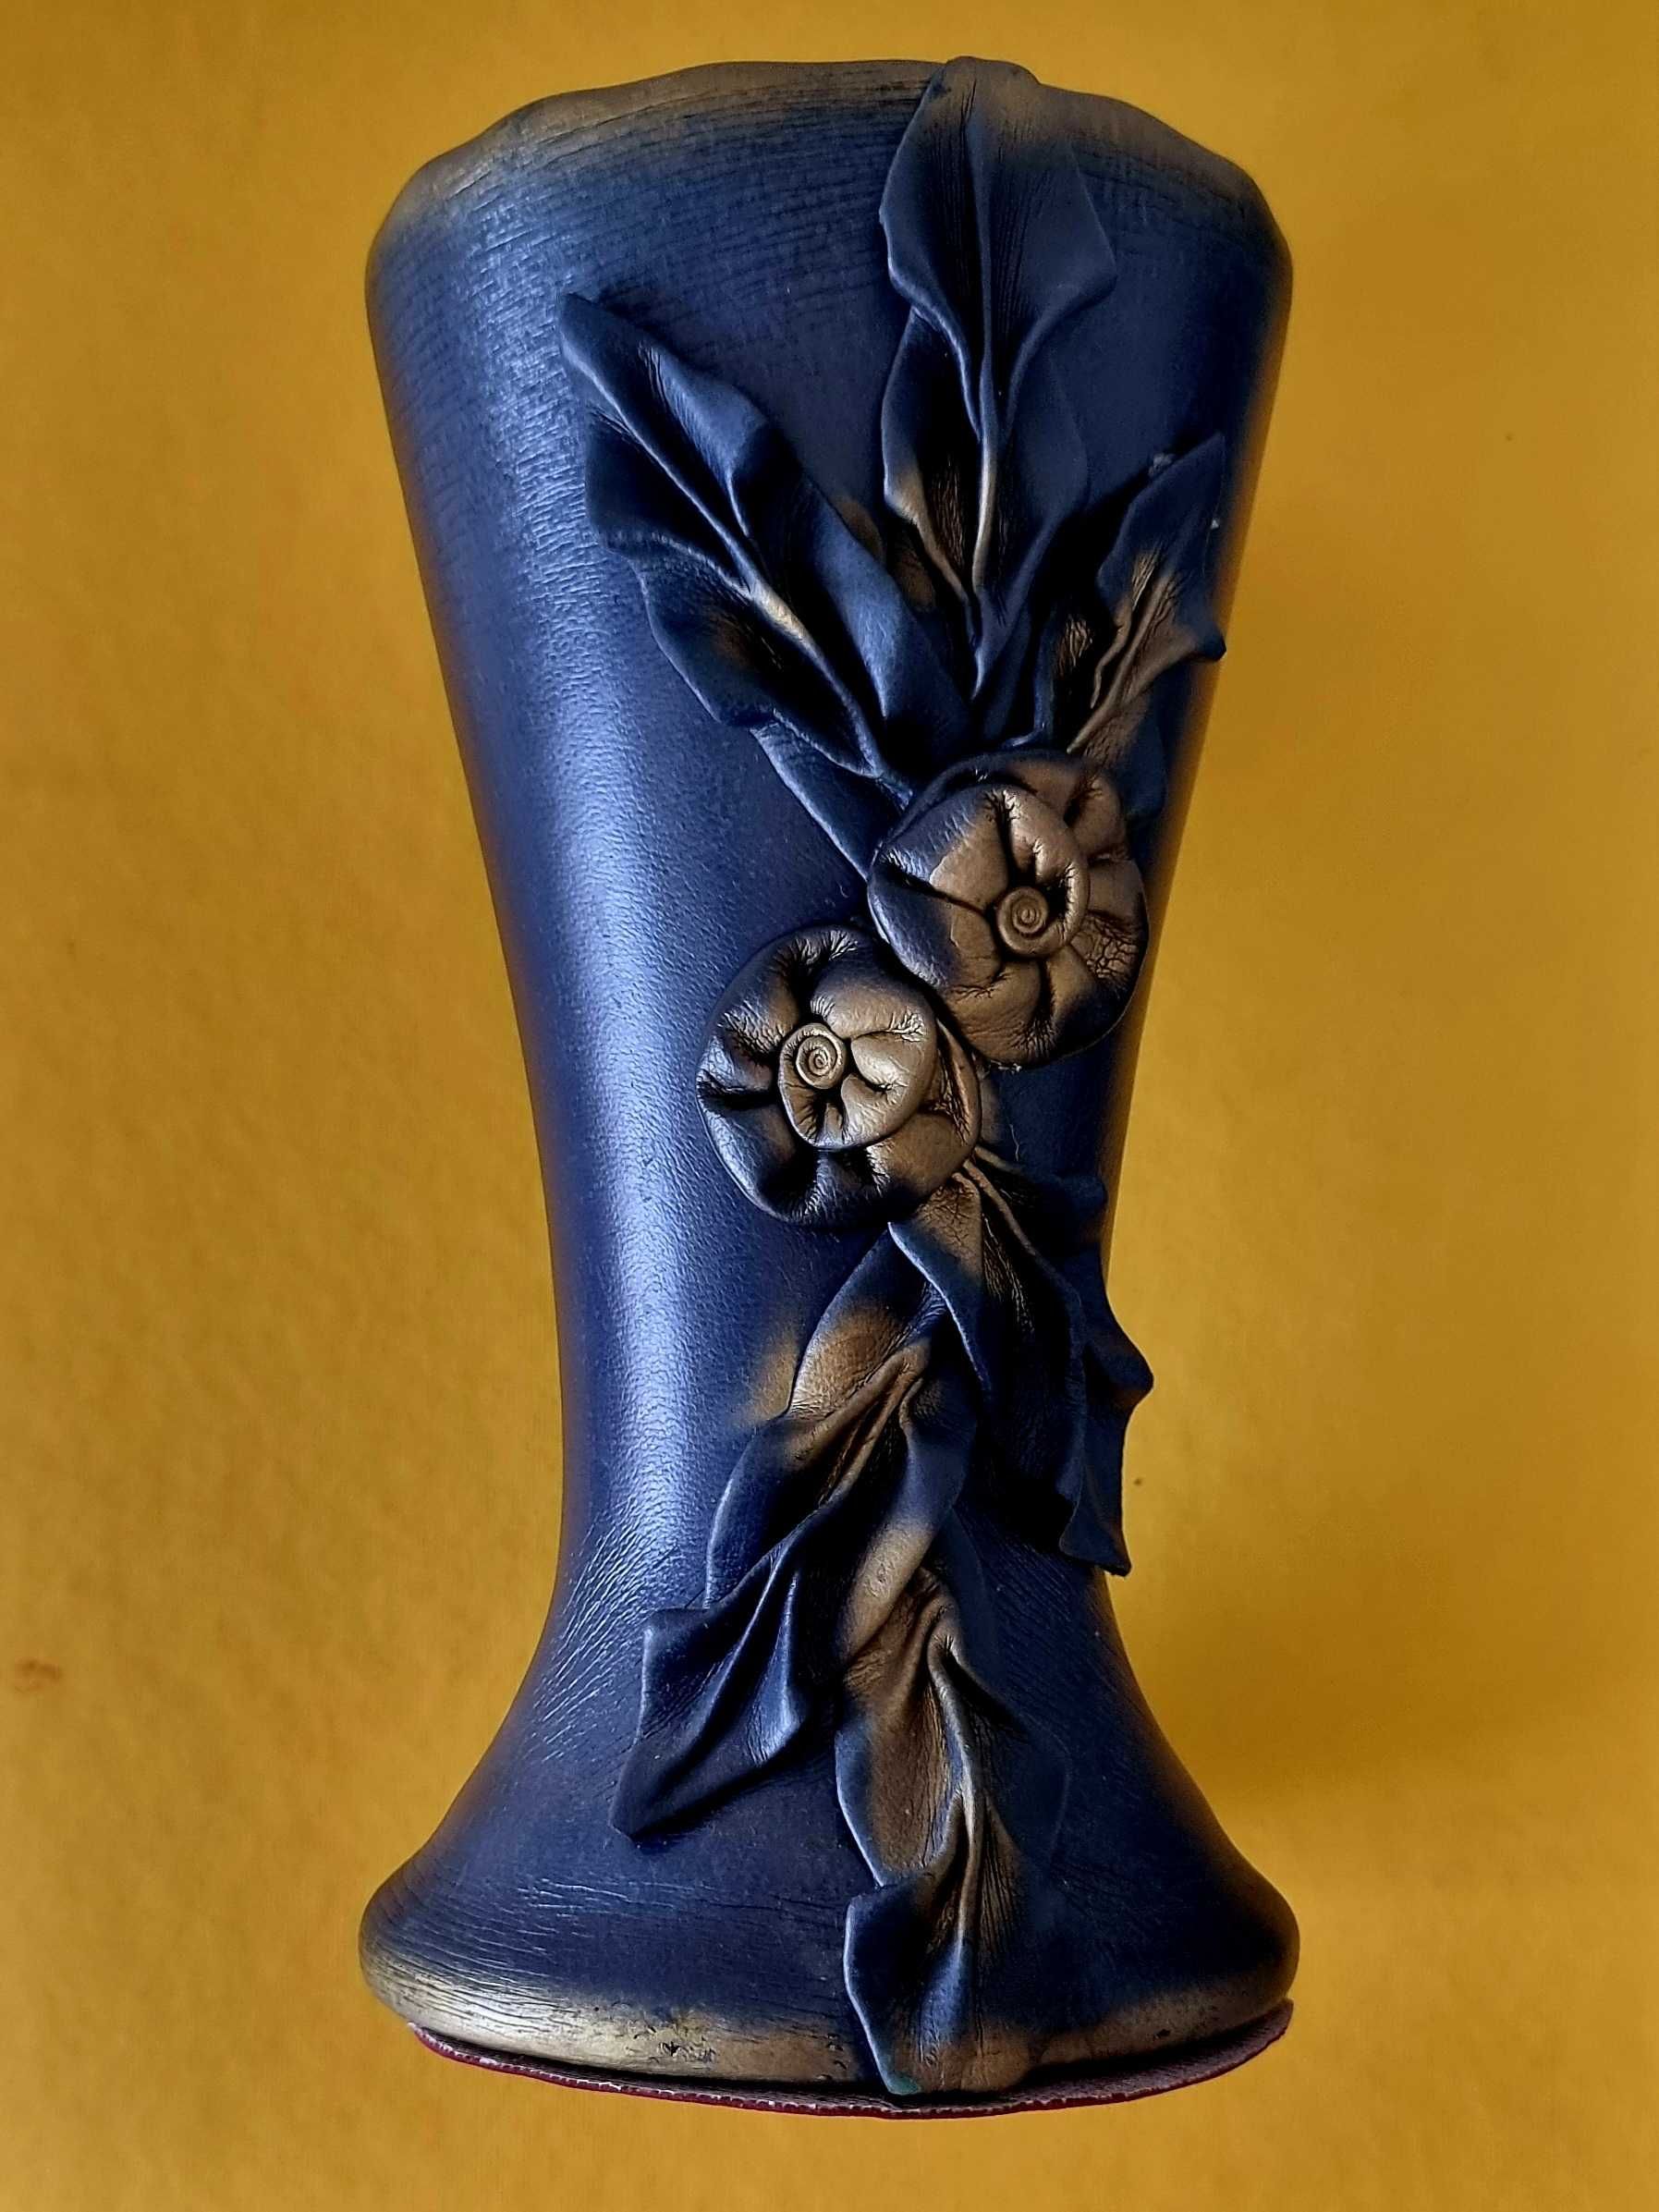 ACCESORII - vaza vintage cu exterior din piele model trandafiri